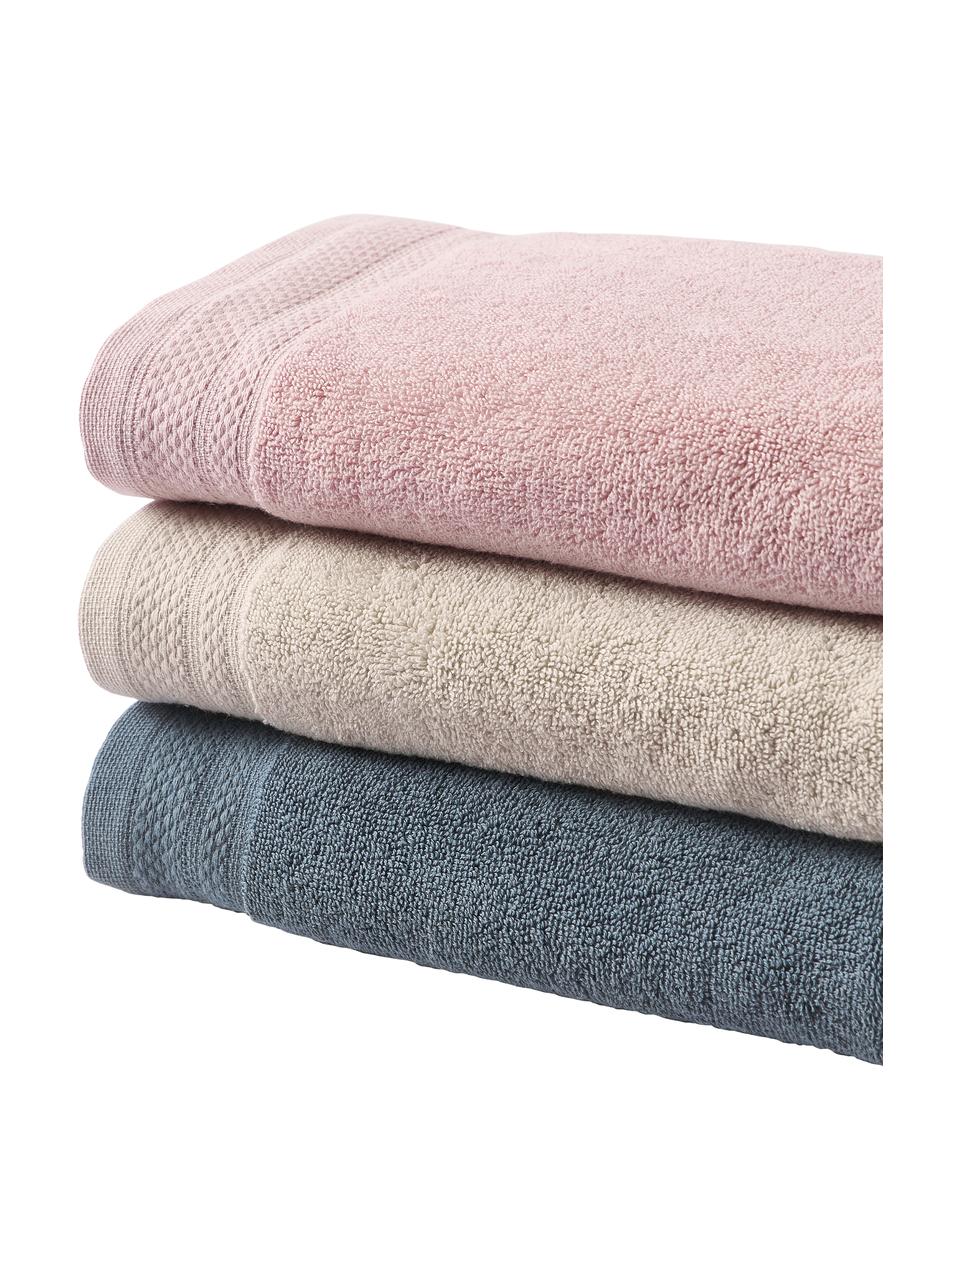 Súprava uterákov z organickej bavlny Premium, 3 diely, Staroružová, Súprava s rôznymi veľkosťami